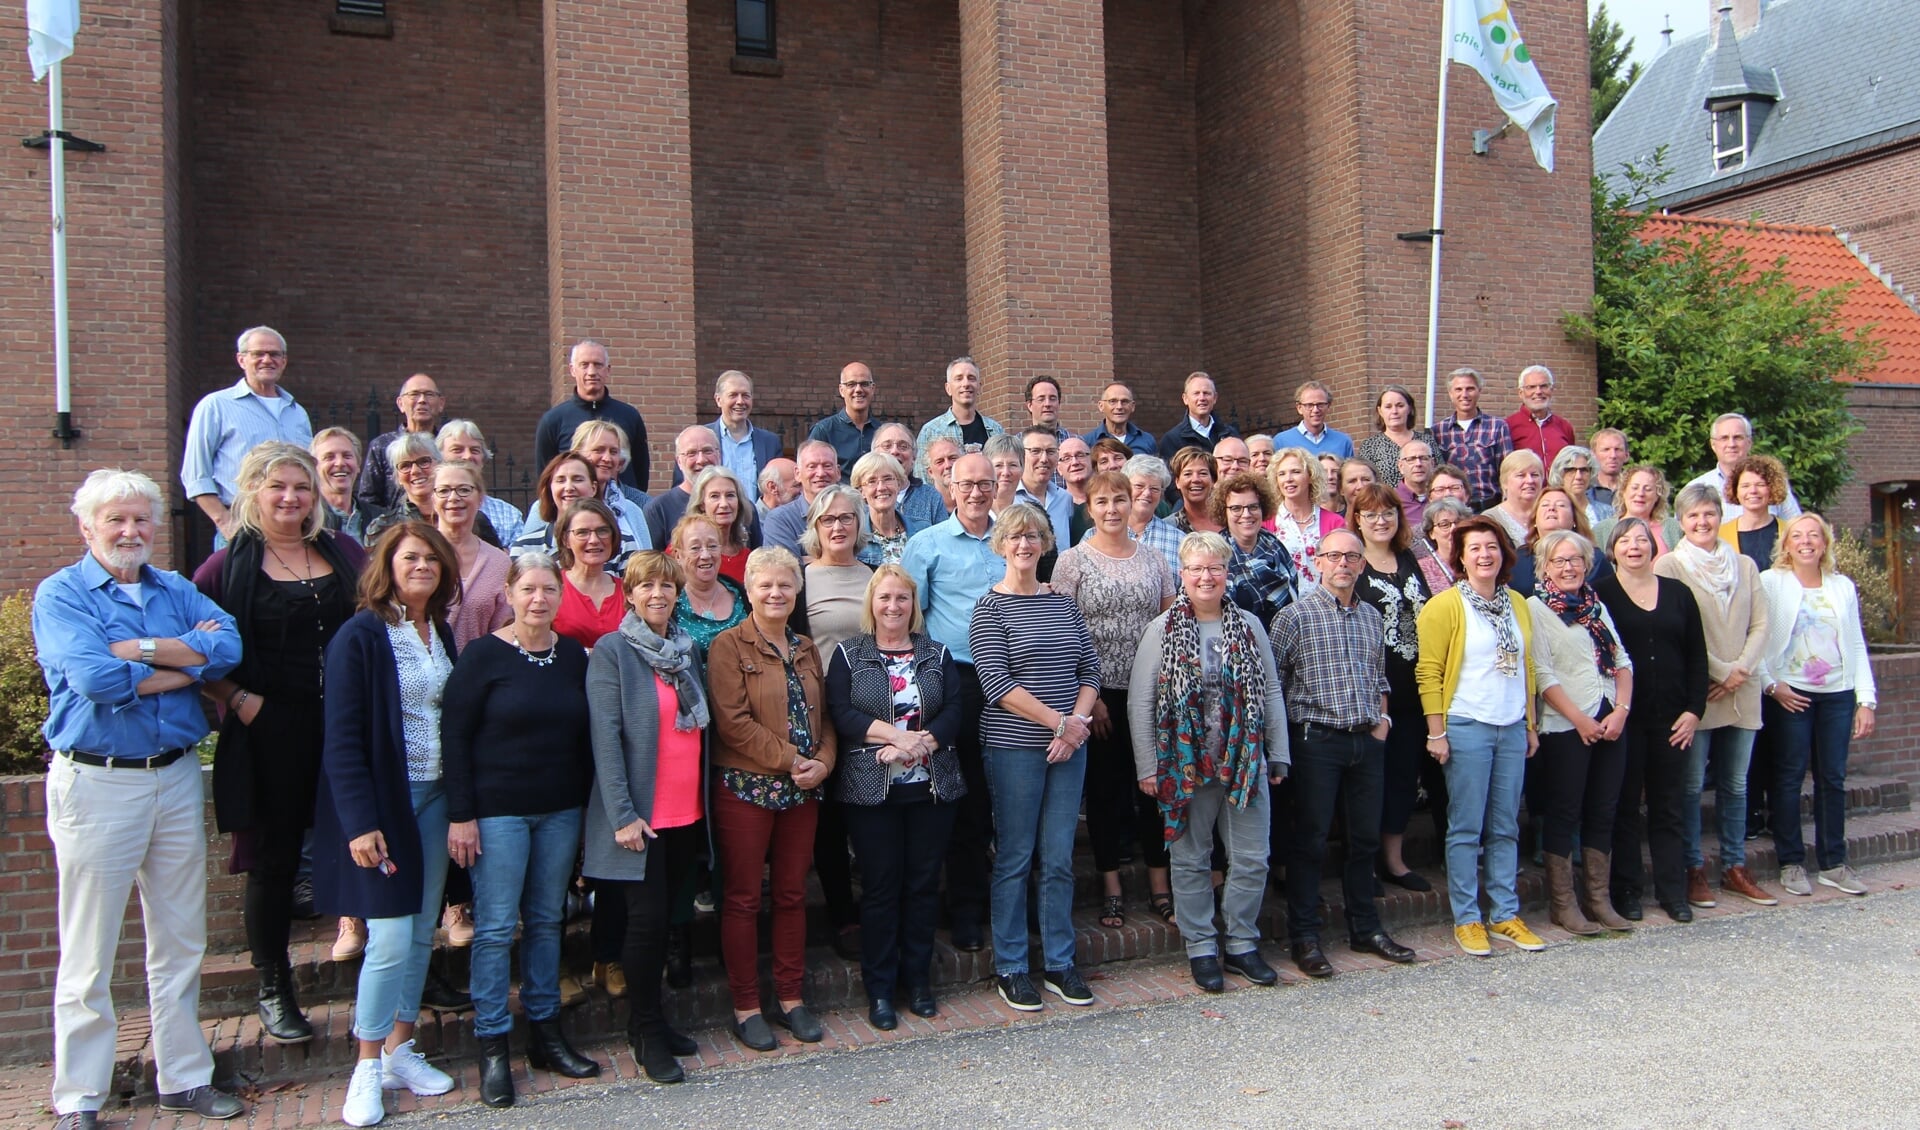 Plm. 65 (van de 85) koor- + comboleden waren zaterdag naar De Bilt terug van plm. 29 jaar weggeweest.